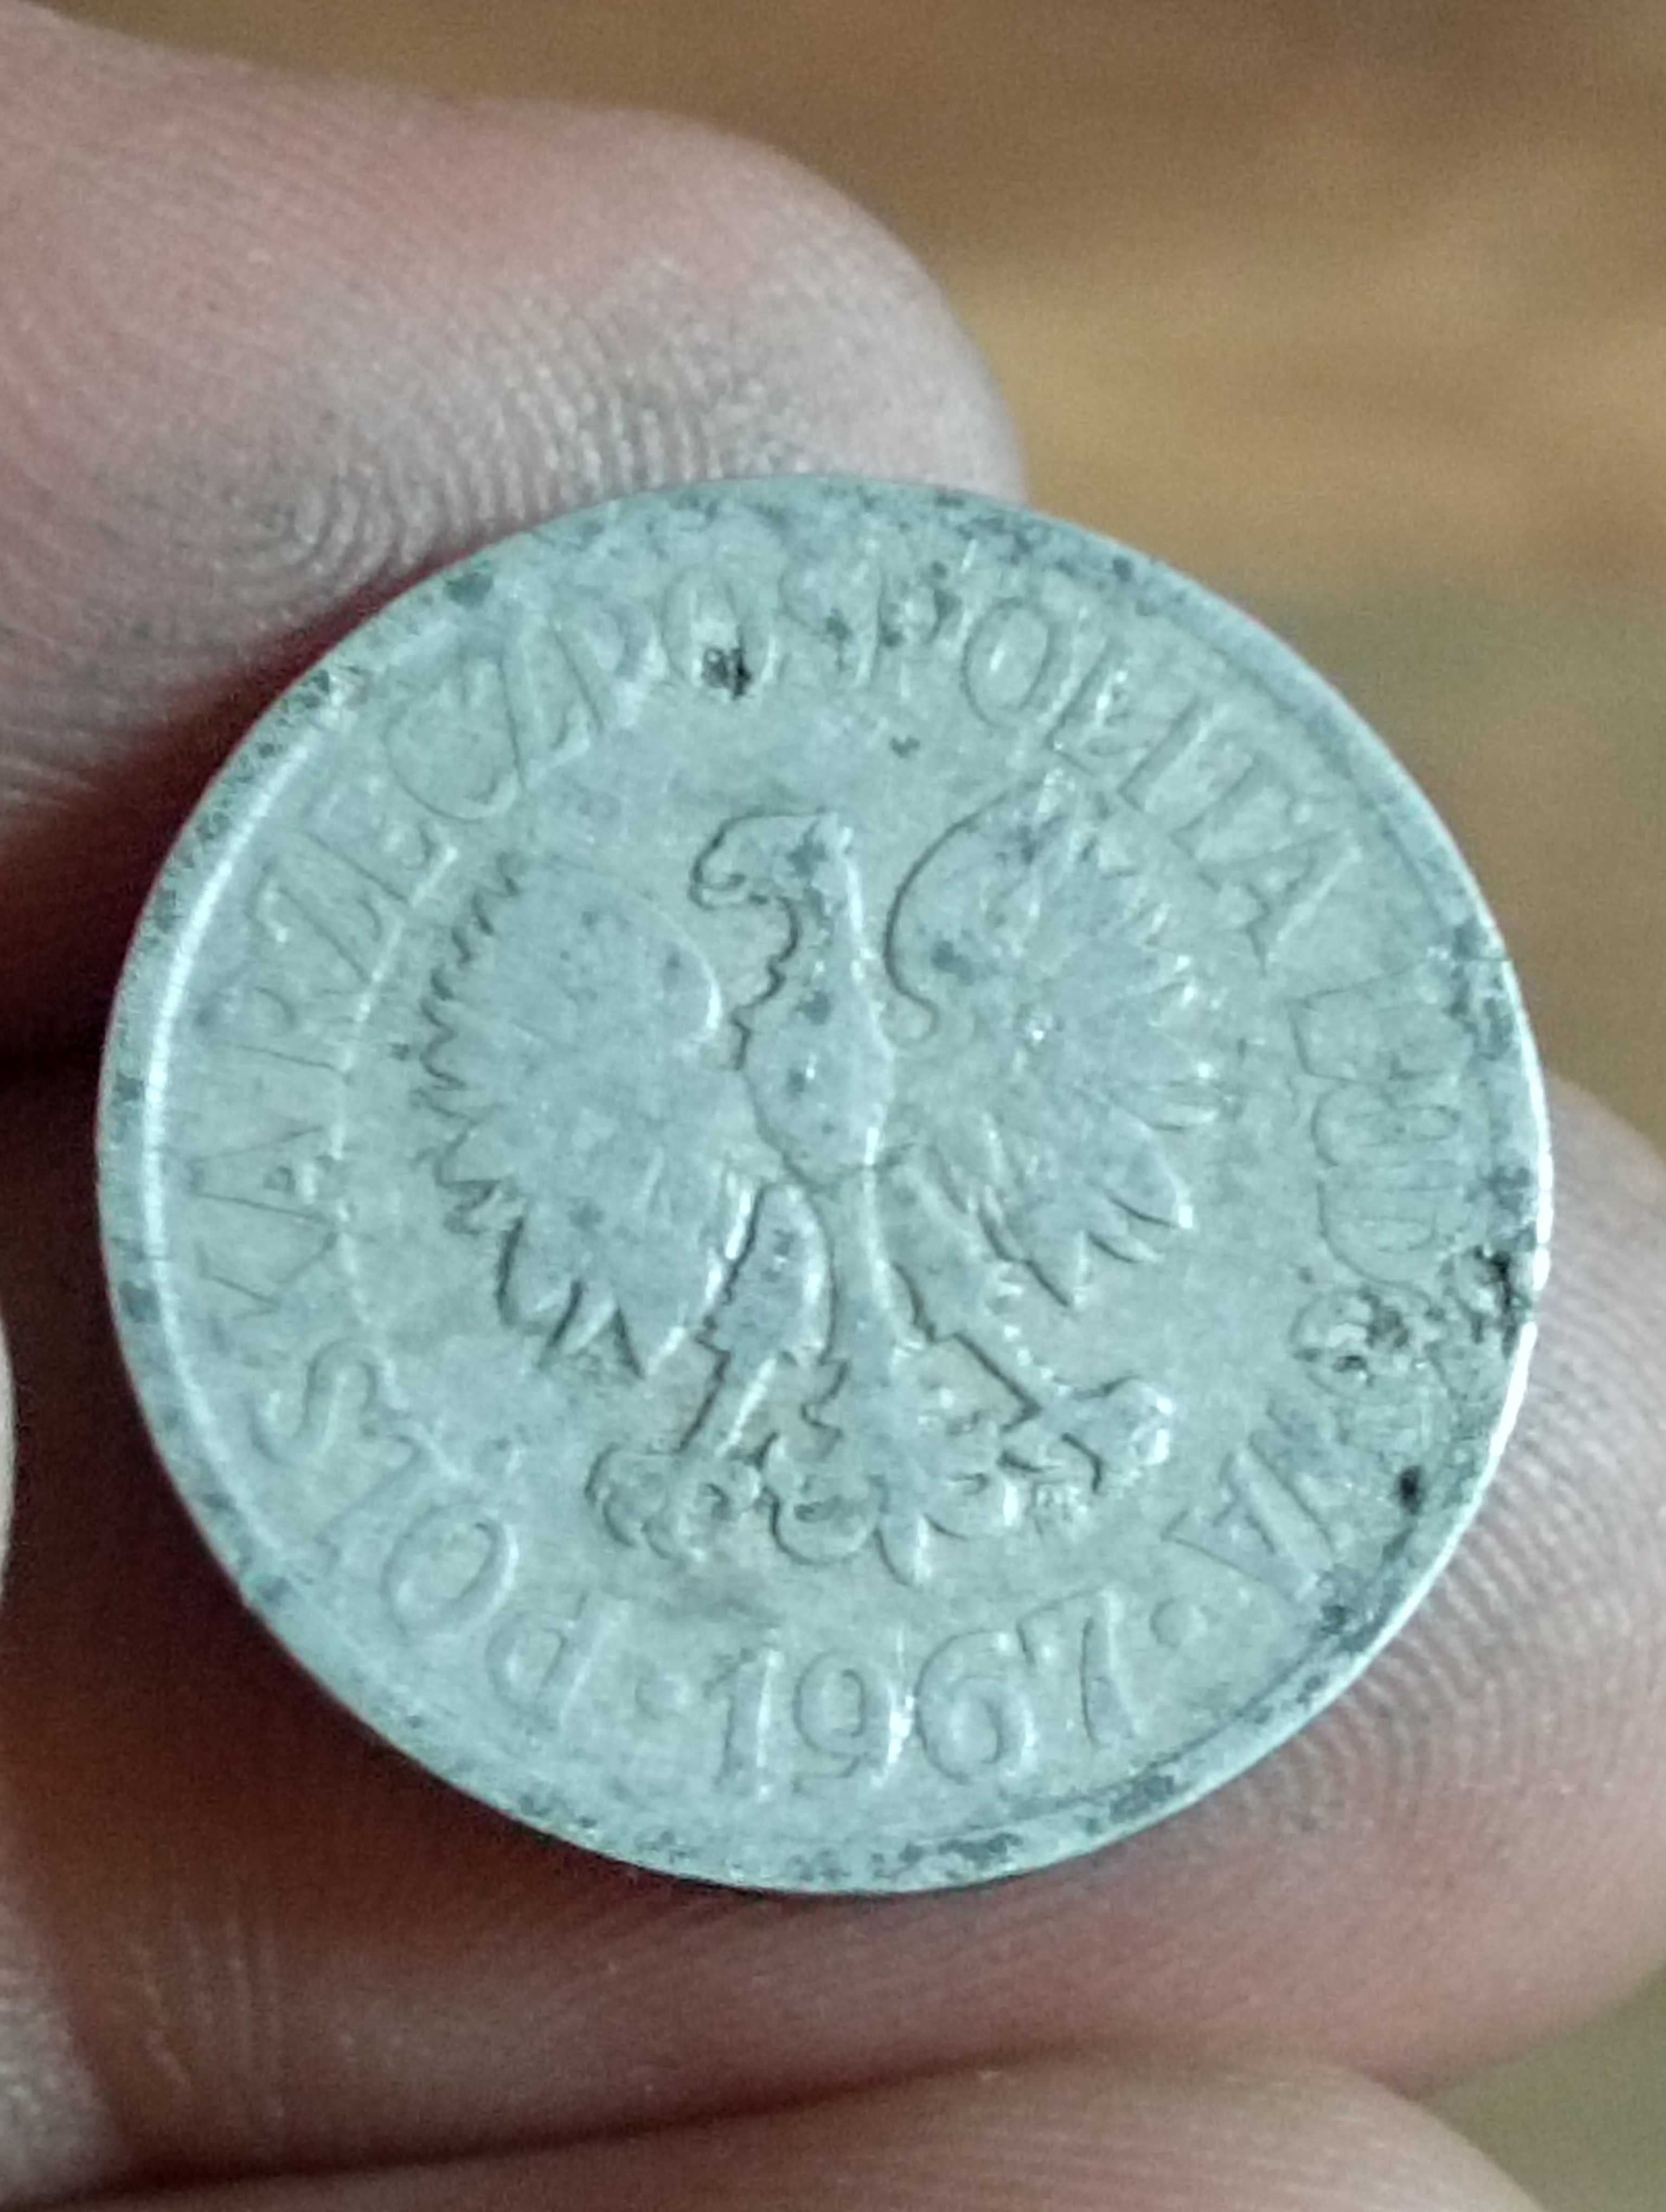 Sprzedam monete rr 20 groszy 1967 rok